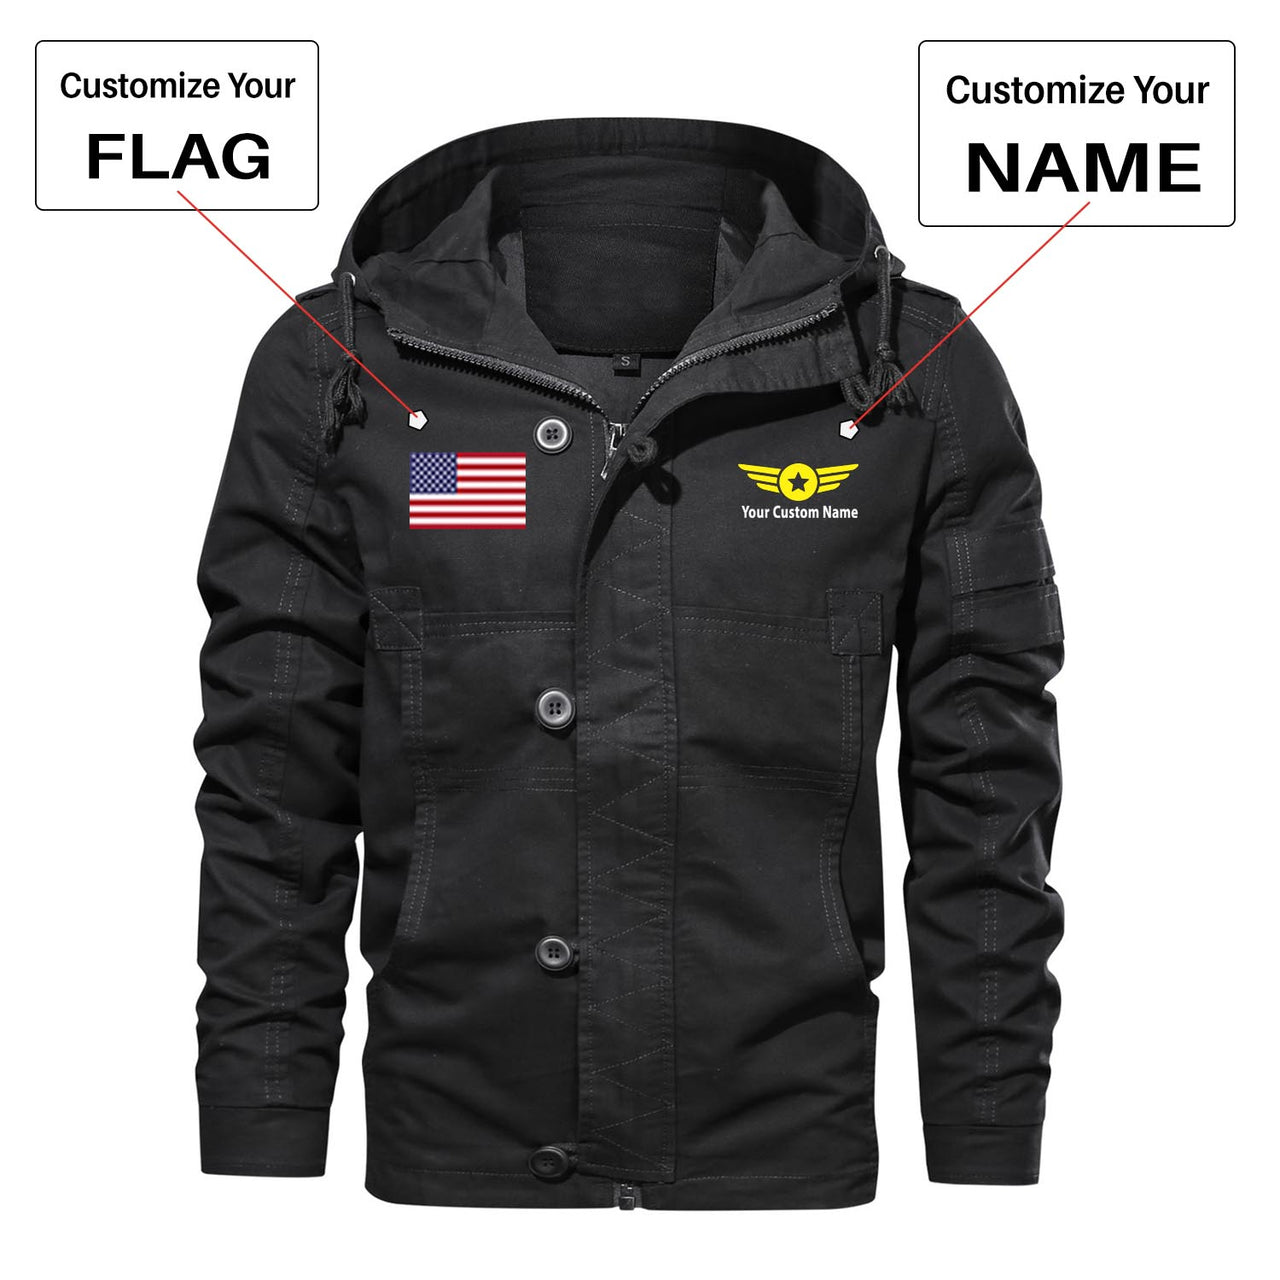 Custom Flag & Name "Badge 4" Designed Cotton Jackets